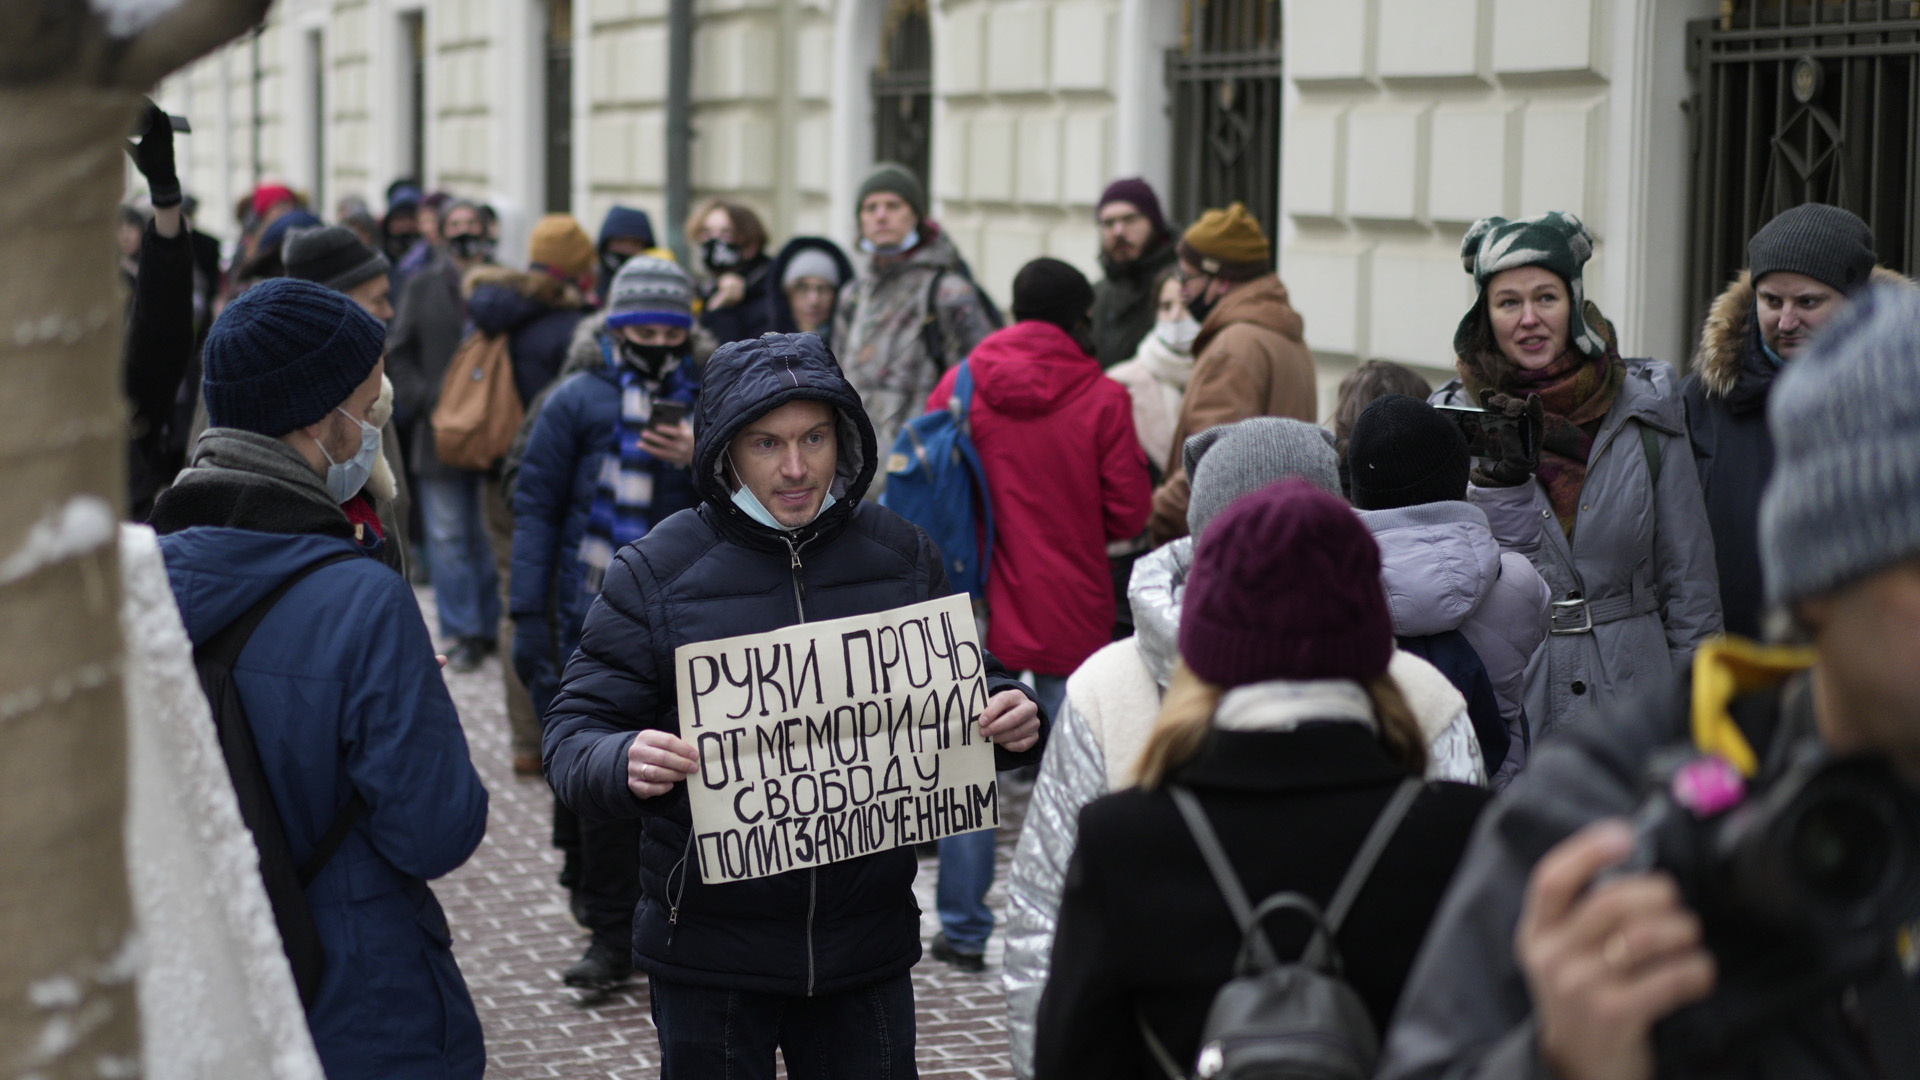 Ein Demonstrant hält ein russisches Plakat mit der Aufschrift "Hände weg von Memorial, Freiheit für politische Gefangene" hoch.  | picture alliance/dpa/AP